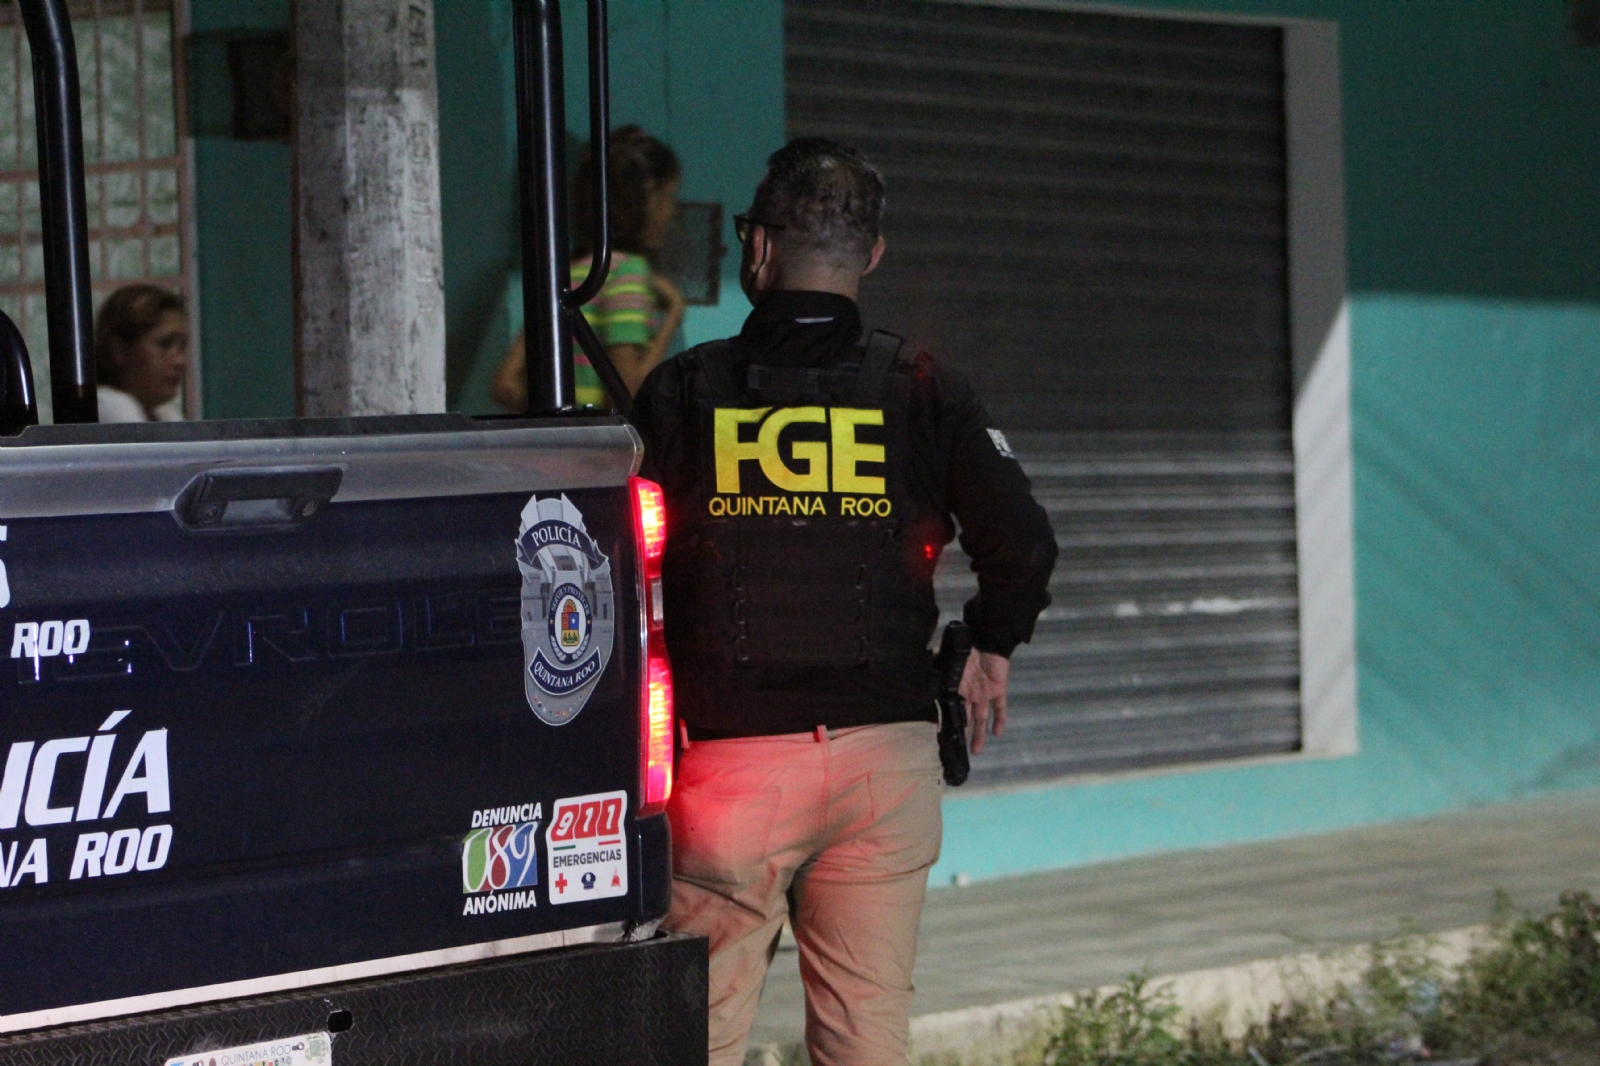 Encuesta del Inegi exhibe la 'ineficiencia' de la FGE Quintana Roo con más casos sin resolver